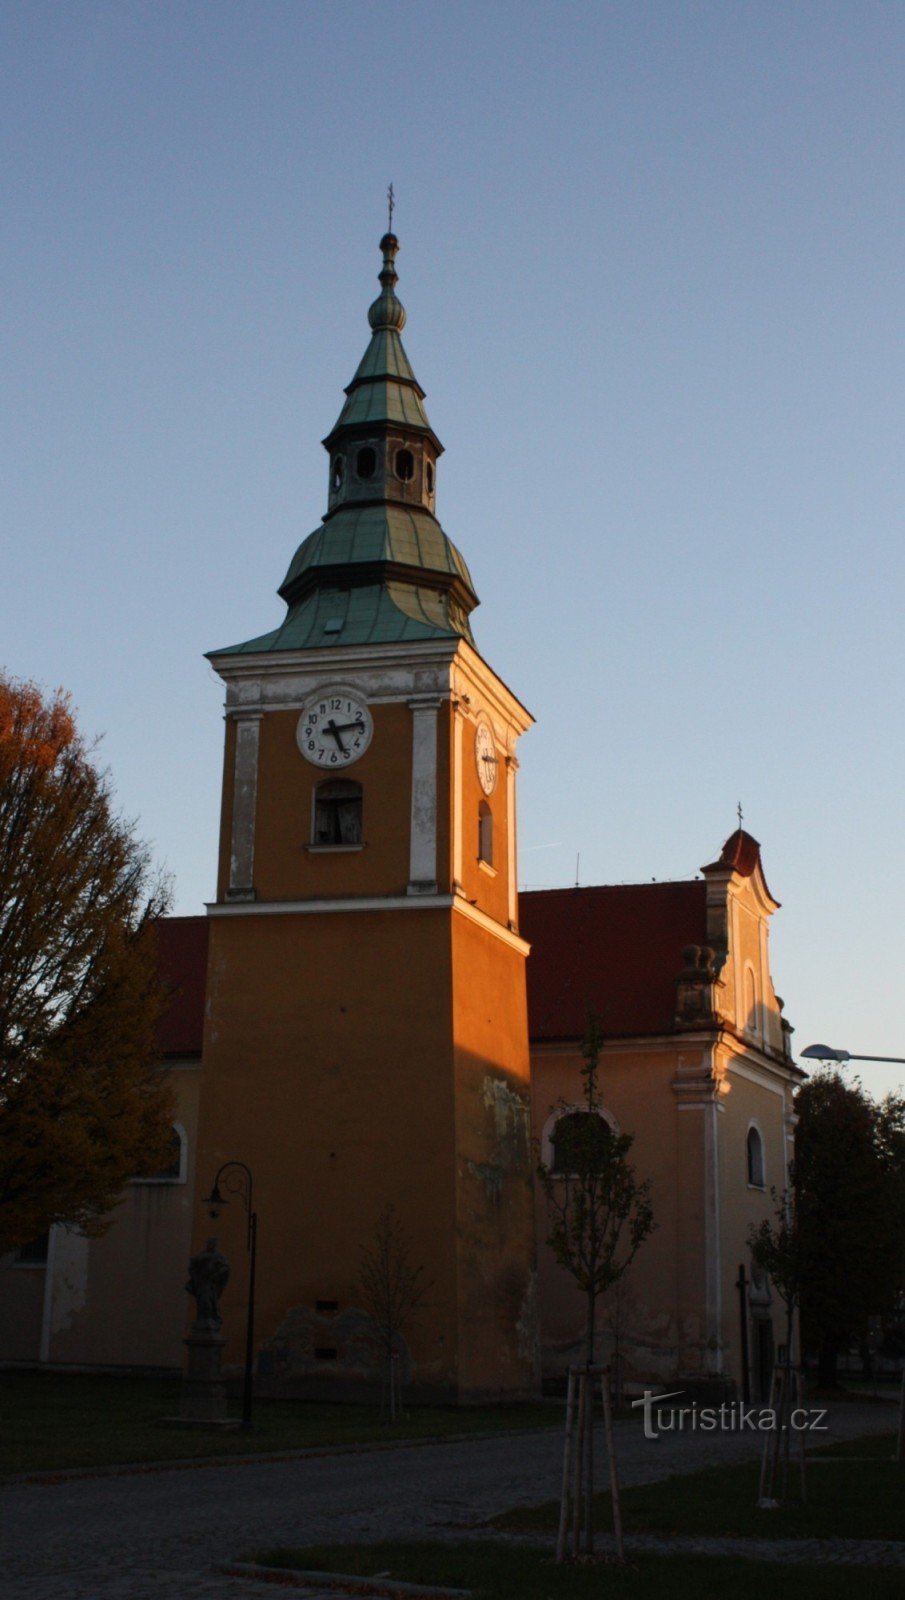 Église paroissiale St. Marie-Madeleine à Němčice nad Hanou